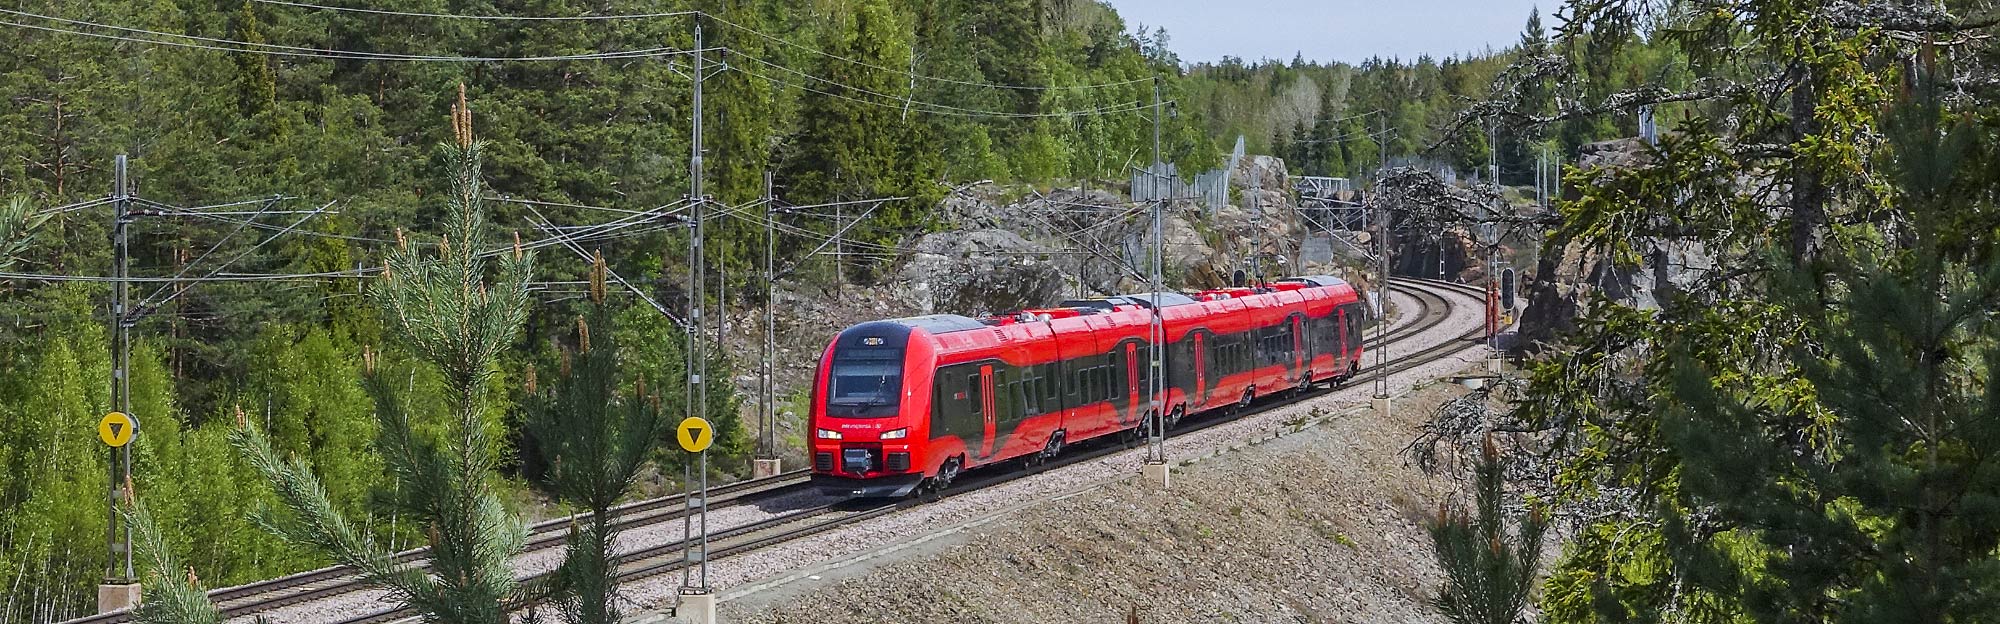 X74 004 som tåg Stockholm-Göteborg på Grödingebanan utanför Stockholm 2015